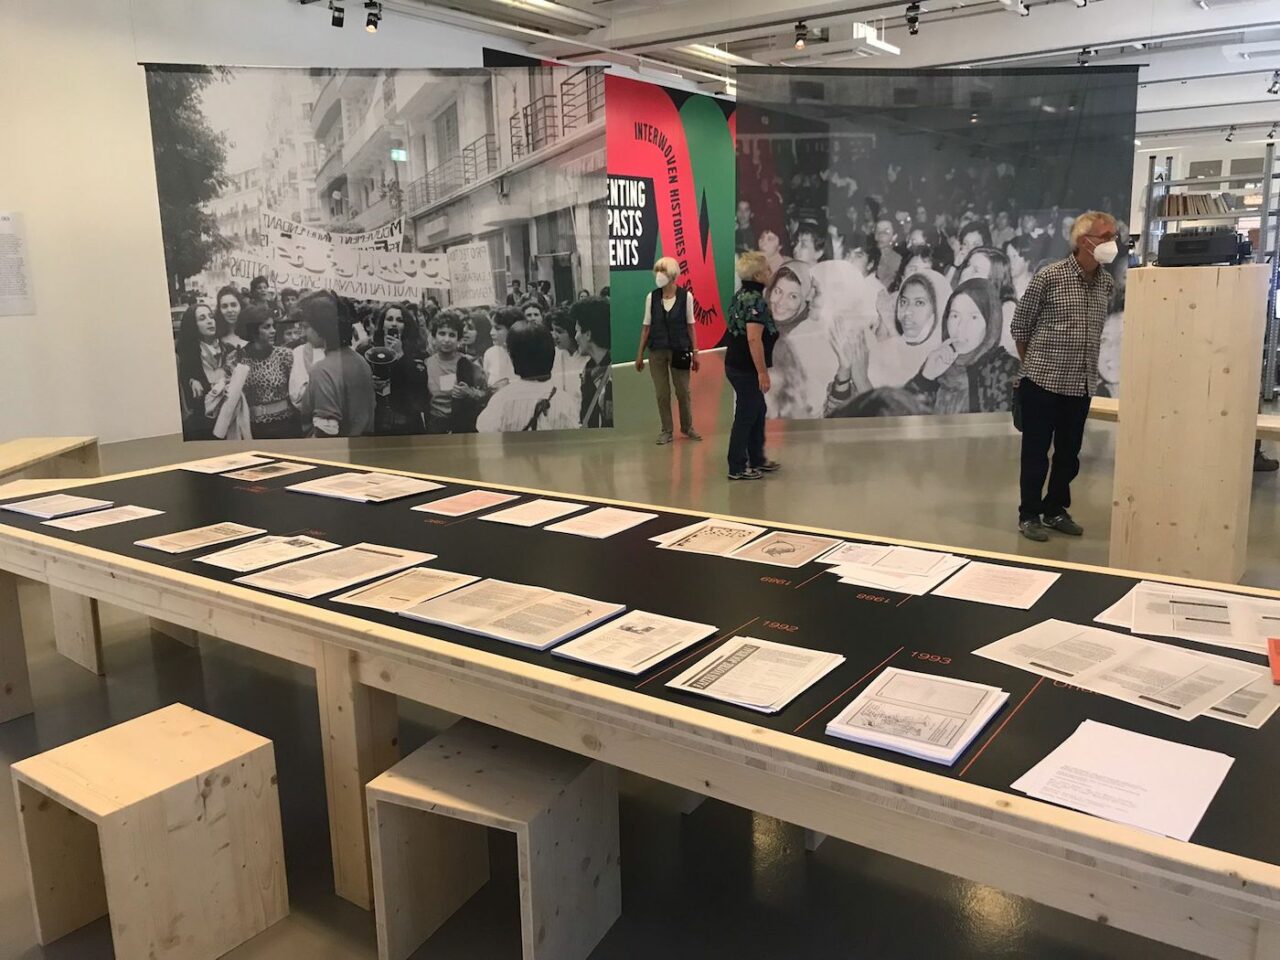 Archives des luttes des femmes en Algérie. Installation view at documenta fifteen, Kassel. Photo: C&